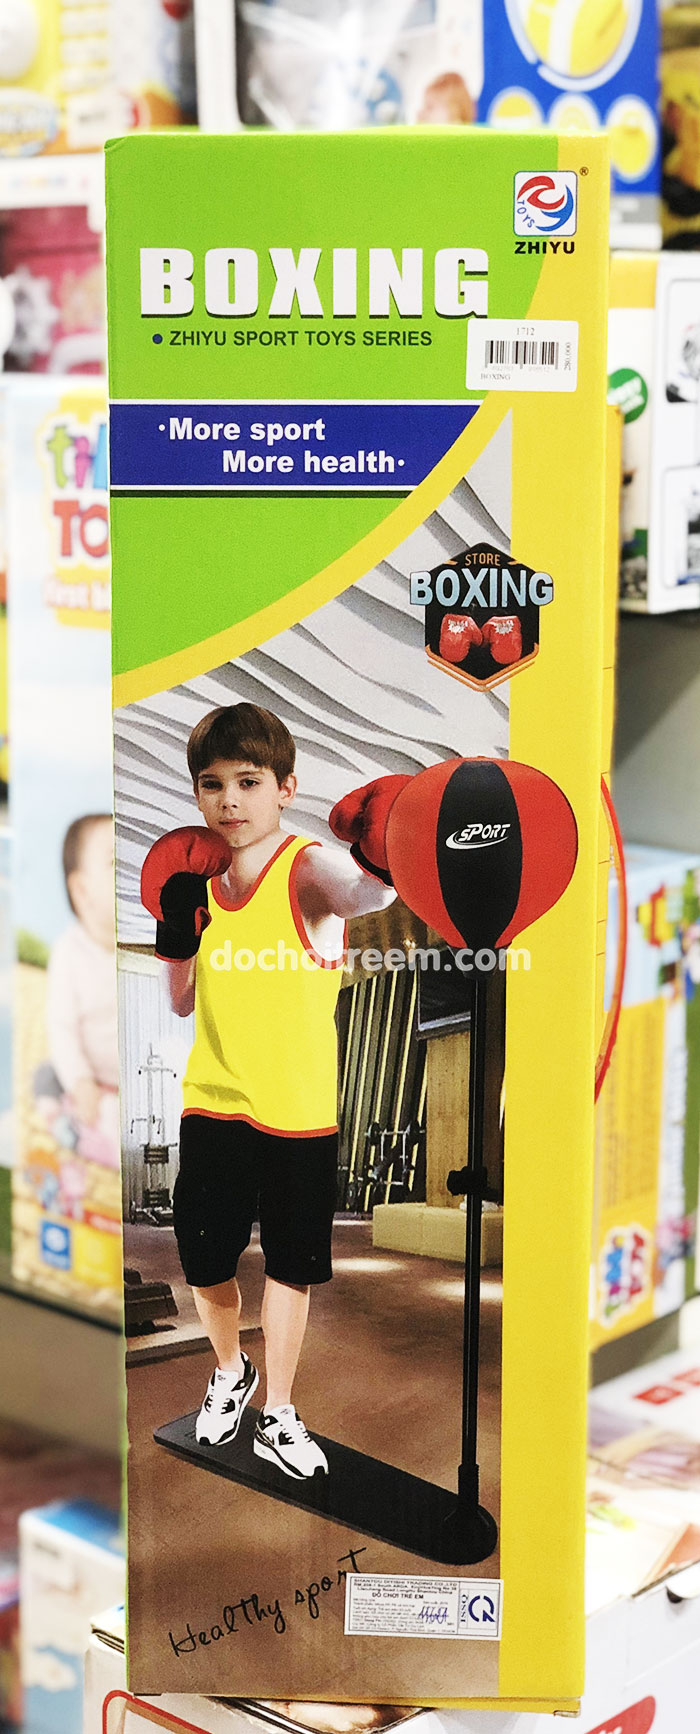 Lớp học Boxing cho trẻ em: Giúp phát triển sức khỏe và kỹ năng tự vệ 2